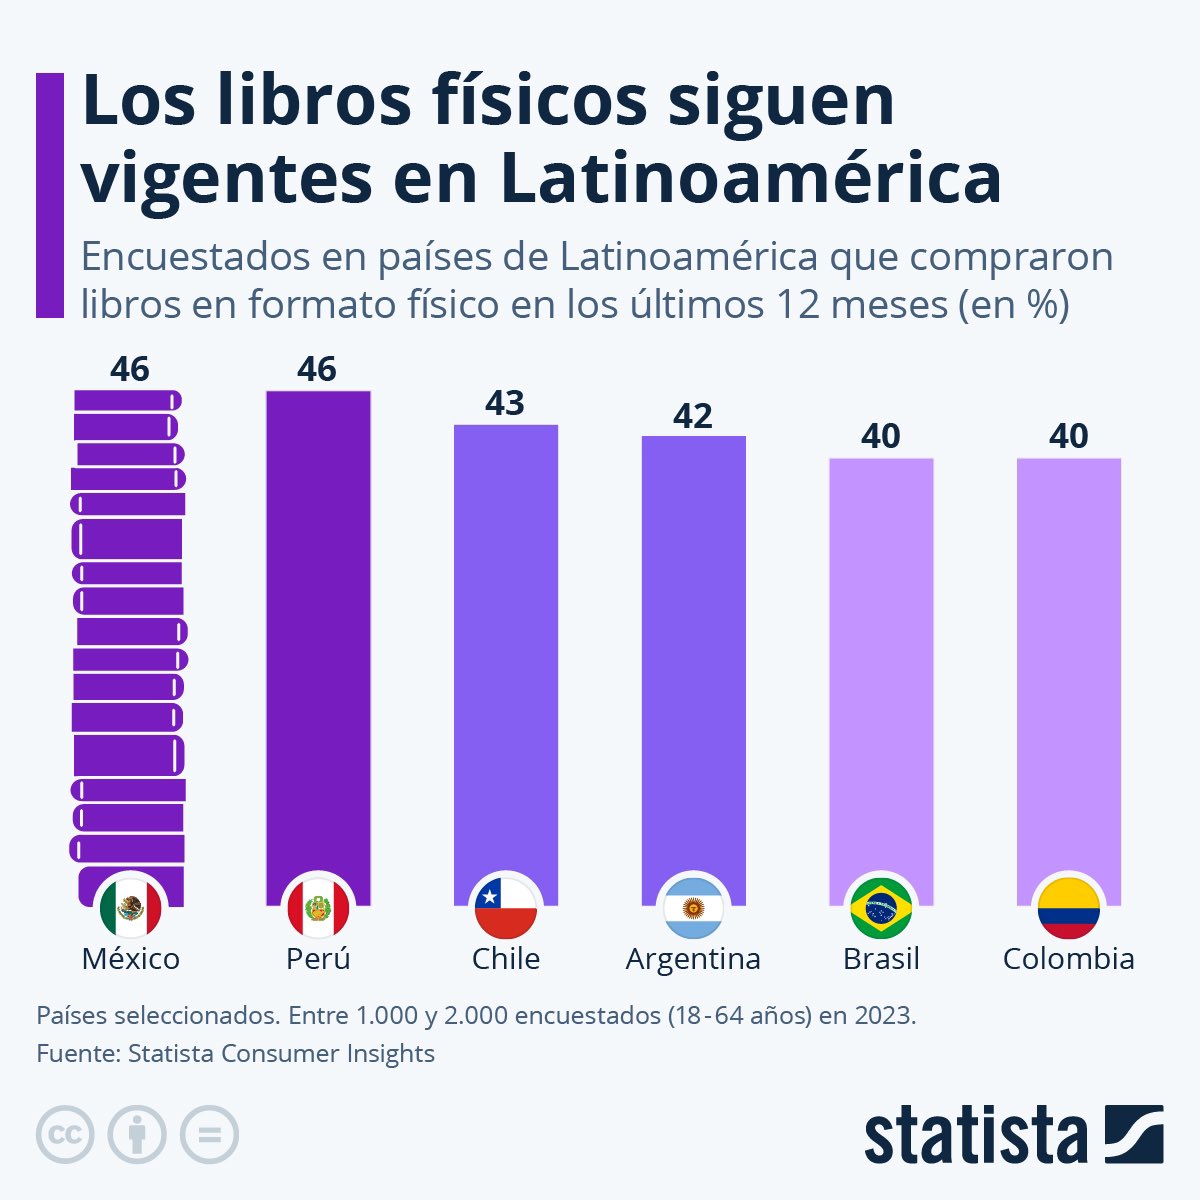 La compra de libros impresos todavía sigue vigente en Latinoamérica. El 46% de los encuestados en México y Perú compraron al menos un libro en los doce meses previos este sondeo, seguidos por Chile (43%) y Argentina (42%). En Brasil y Colombia los porcentajes fueron del 40%.